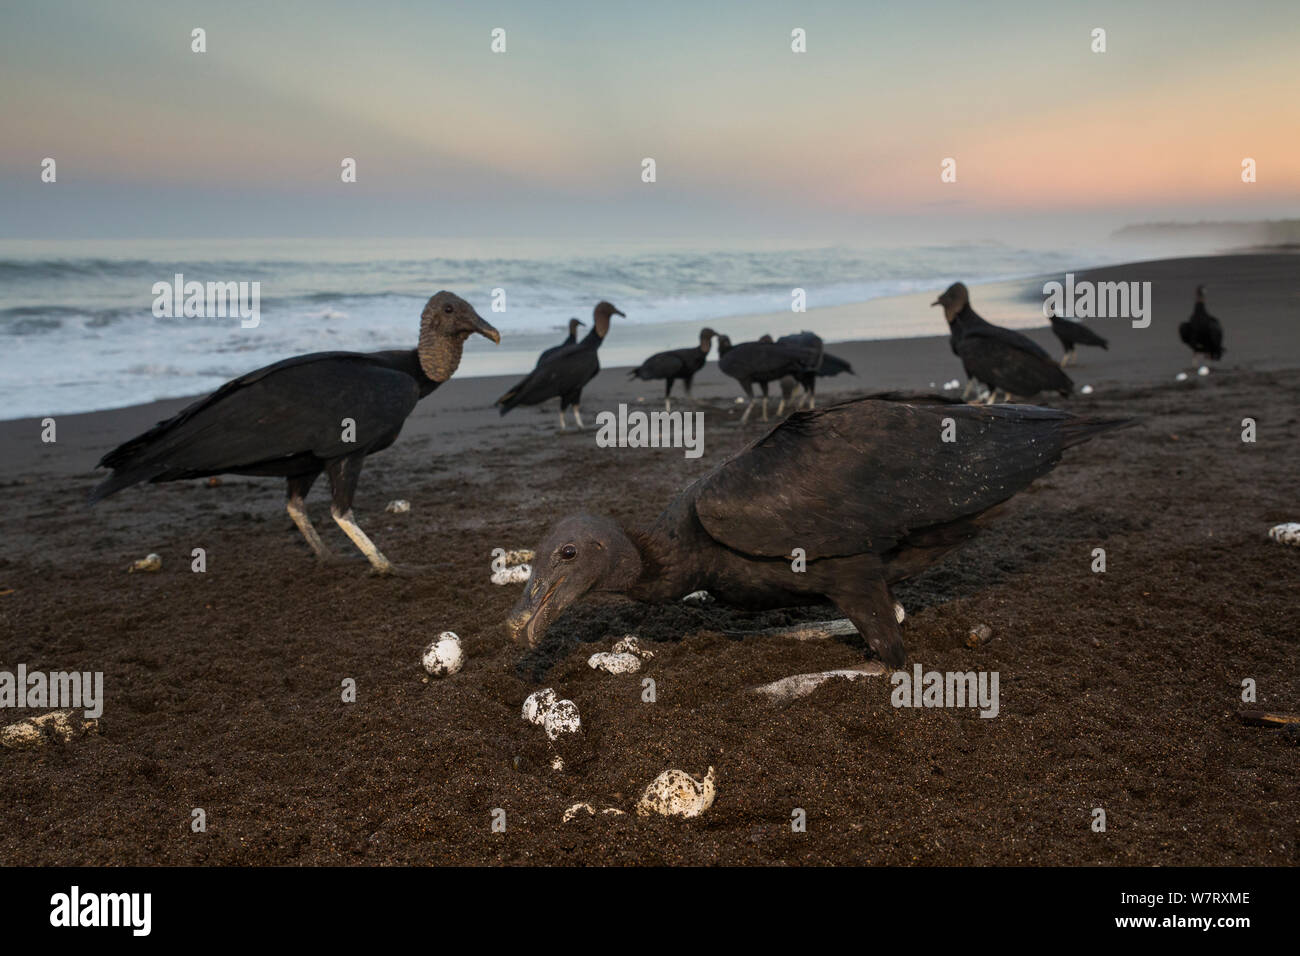 Les vautours noirs (Coragyps atratus) se nourrissent d'œufs de tortues olivâtres (Lepidochelys olivacea) lavés gratuitement à partir de la plage de surf, la côte du Pacifique, Playa Ostional, Costa Rica. Banque D'Images